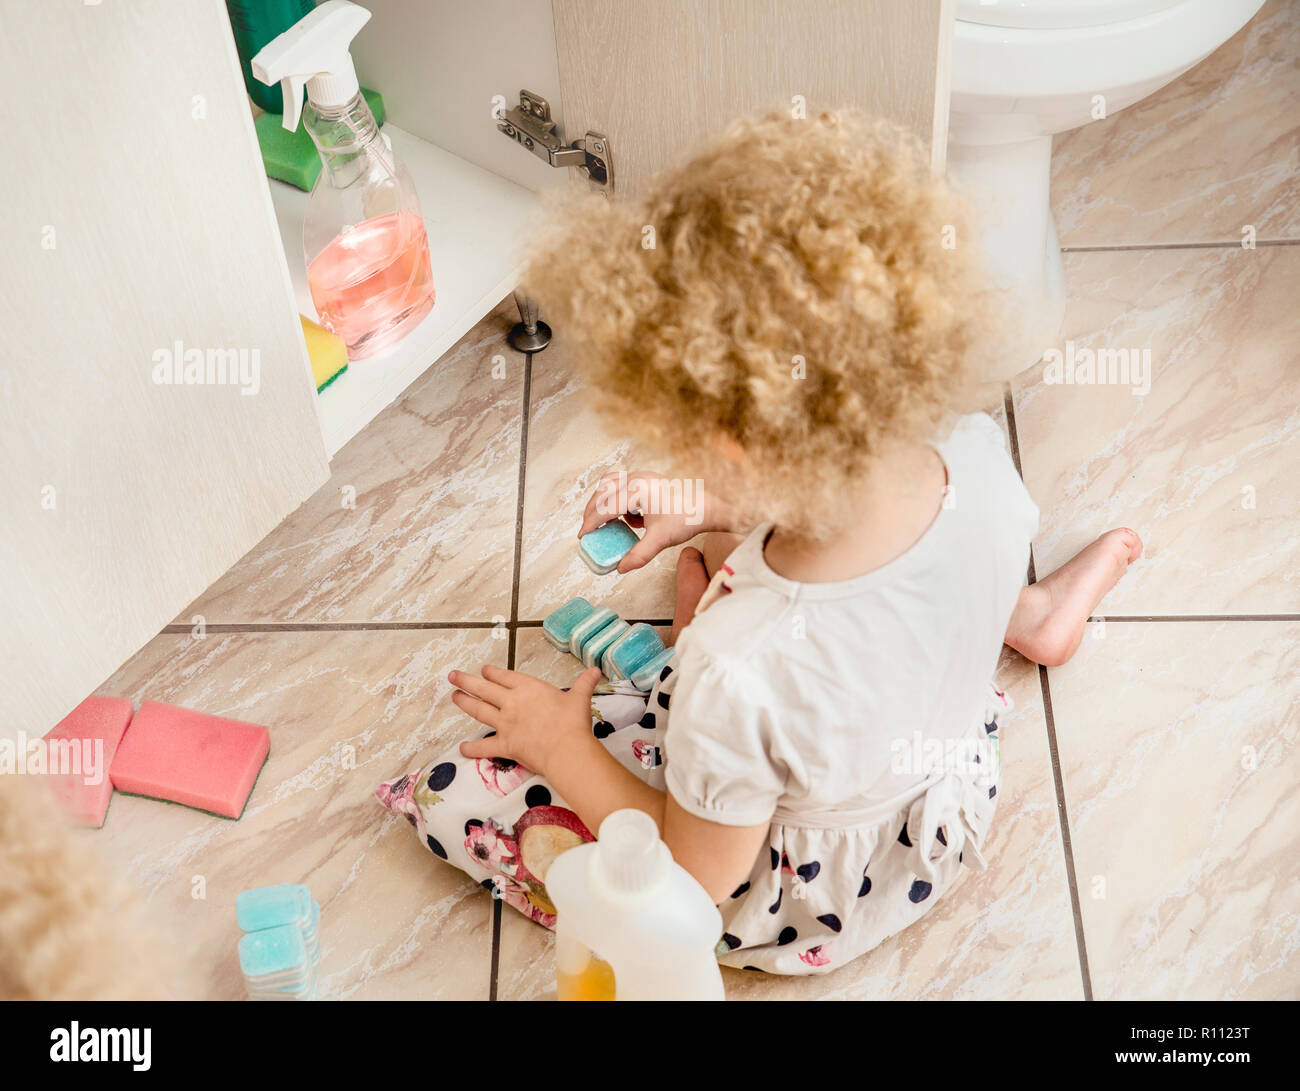 Unbeaufsichtigte Mädchen spielen in ruhige Lage, Bad mit gefährliche Haushaltschemikalien. Gefährdung der Sicherheit zu Hause Konzept. Fernhalten von der Kinder erreichen. Stockfoto